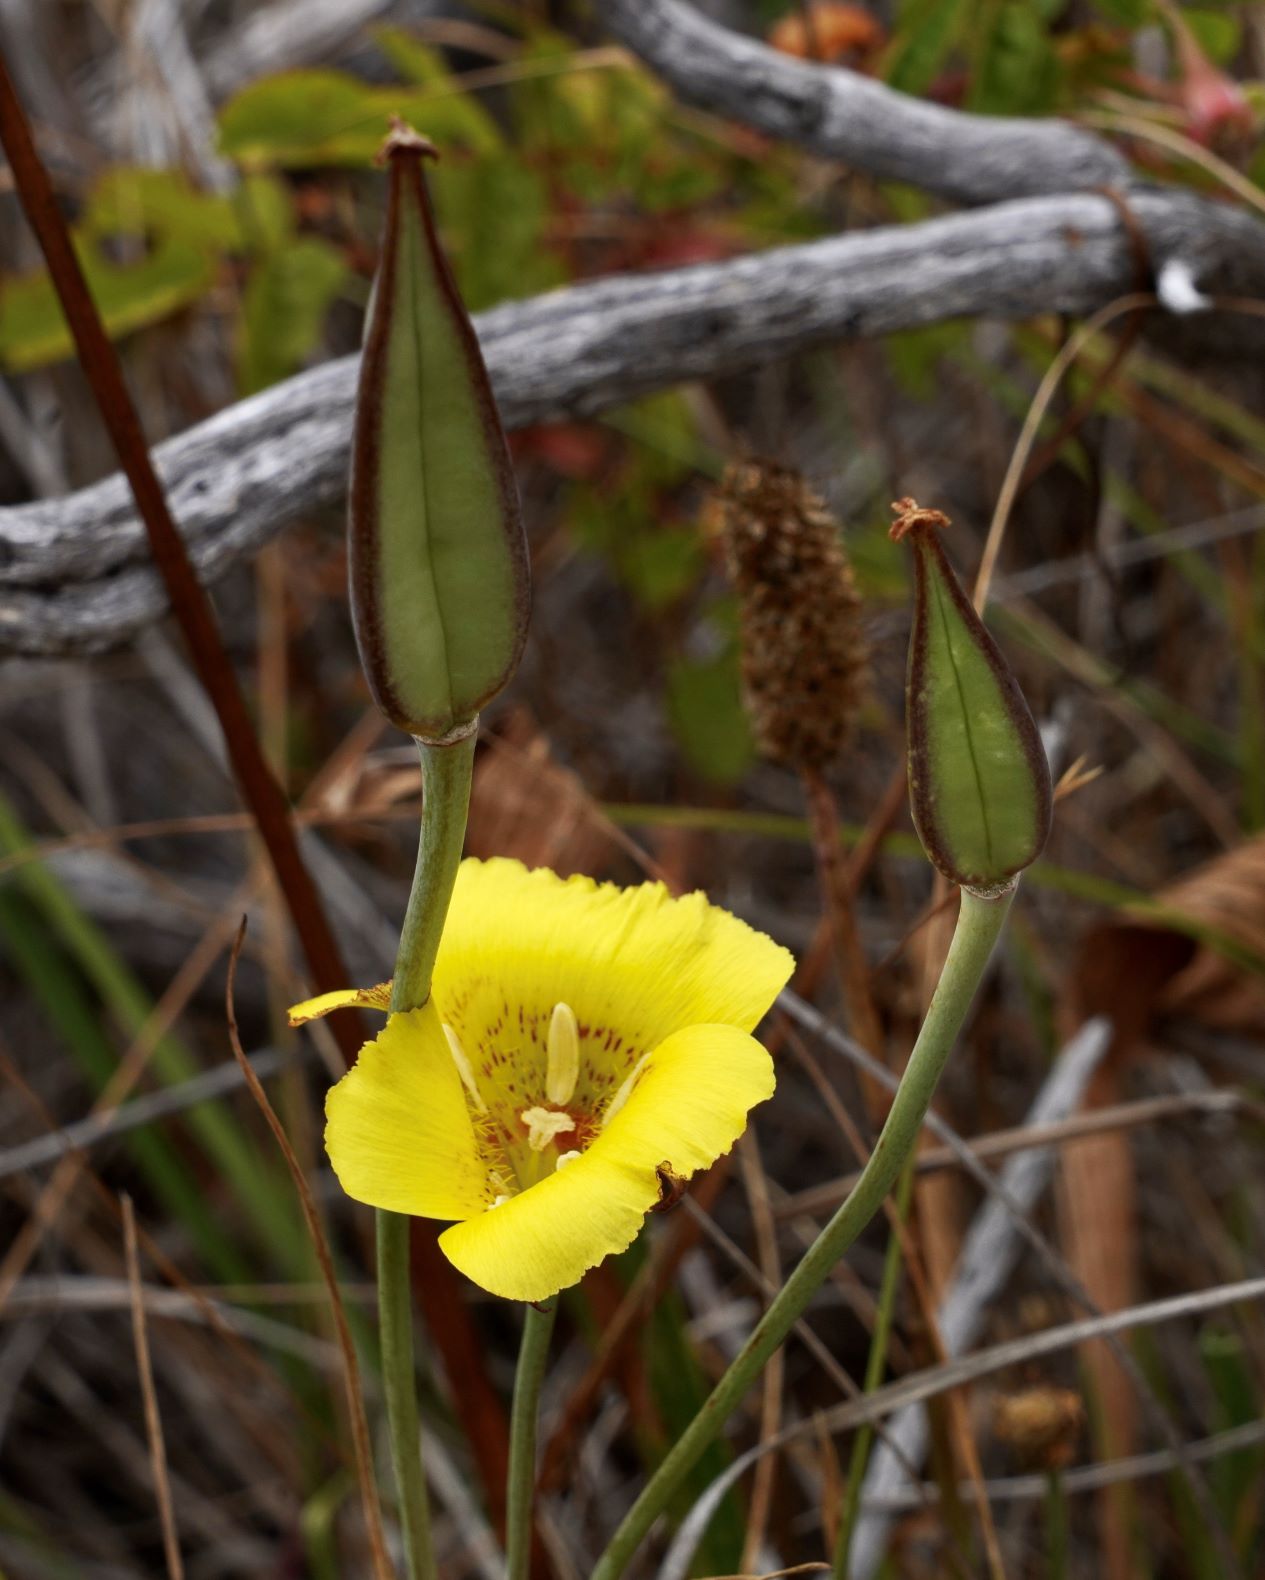 Mariposa Lily, Yellow